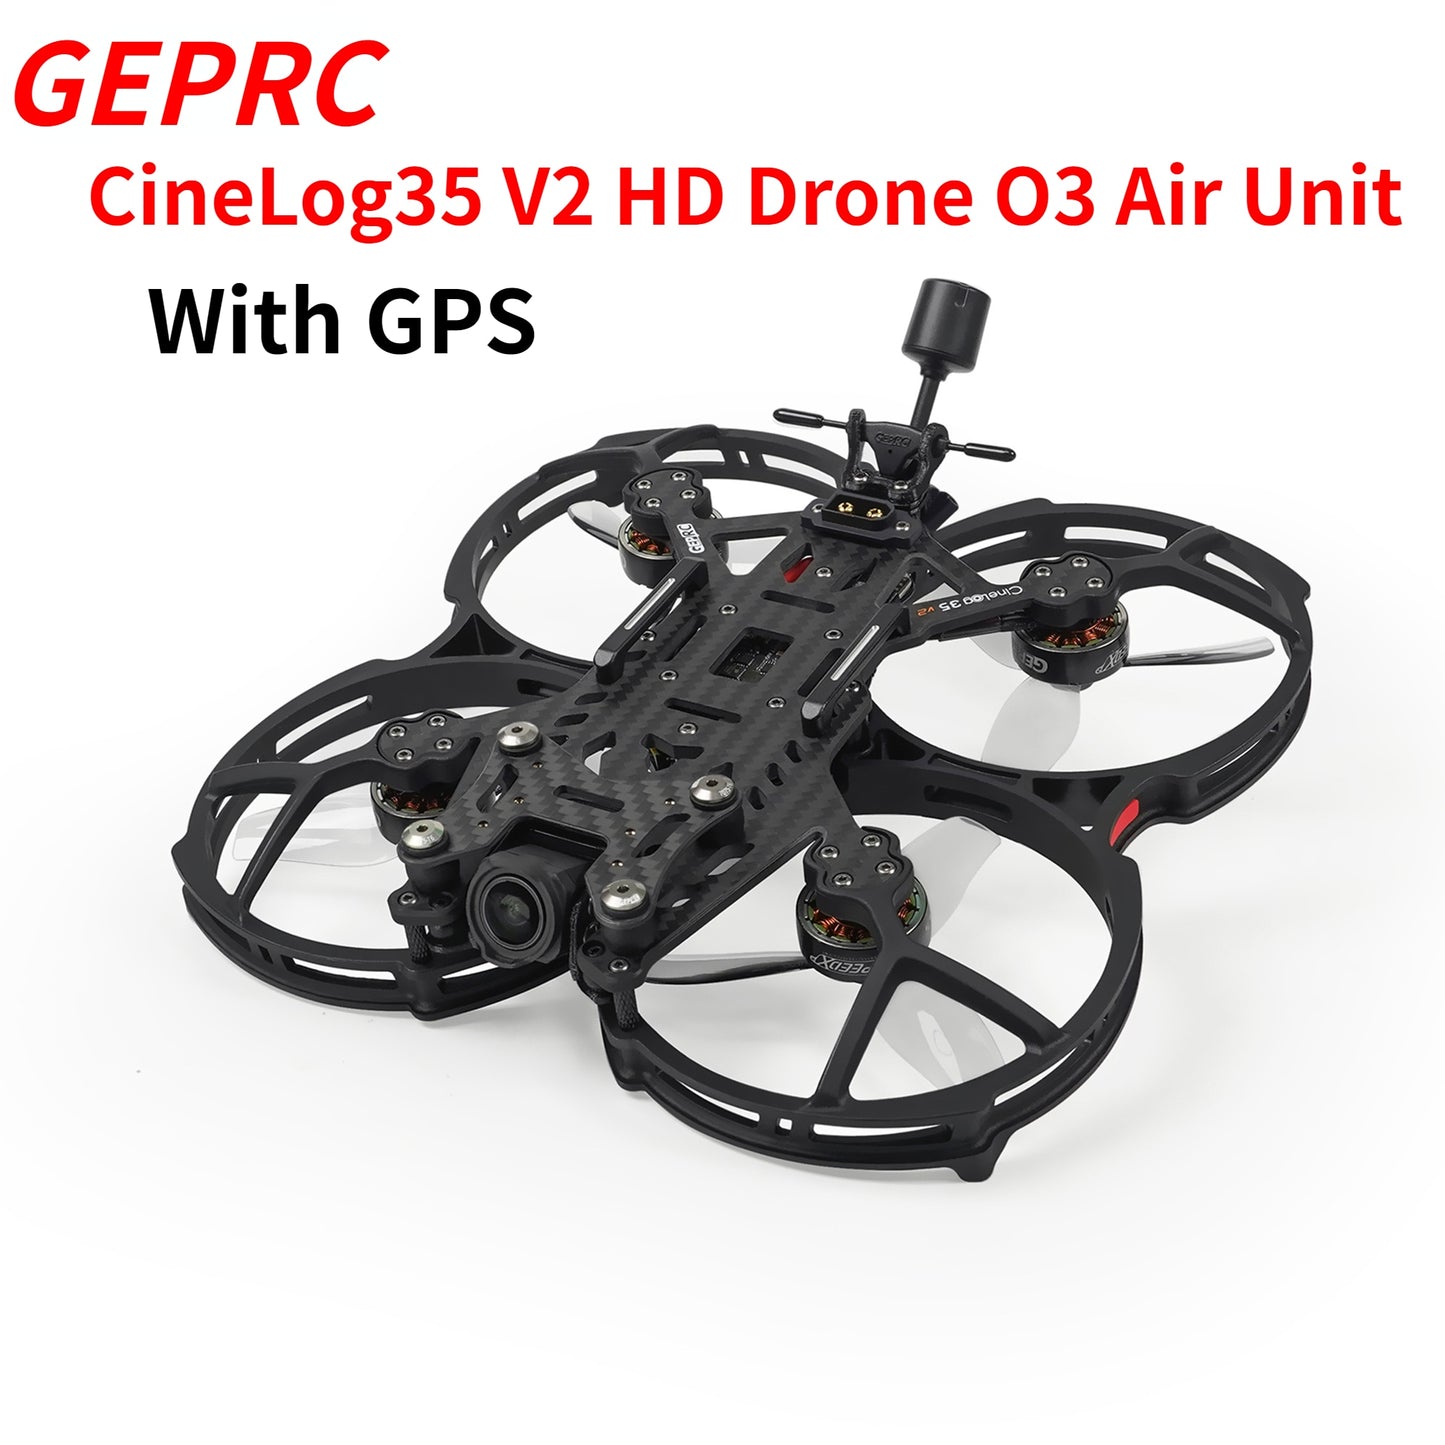 GEPRC CineLog35 V2 HD O3/GPS